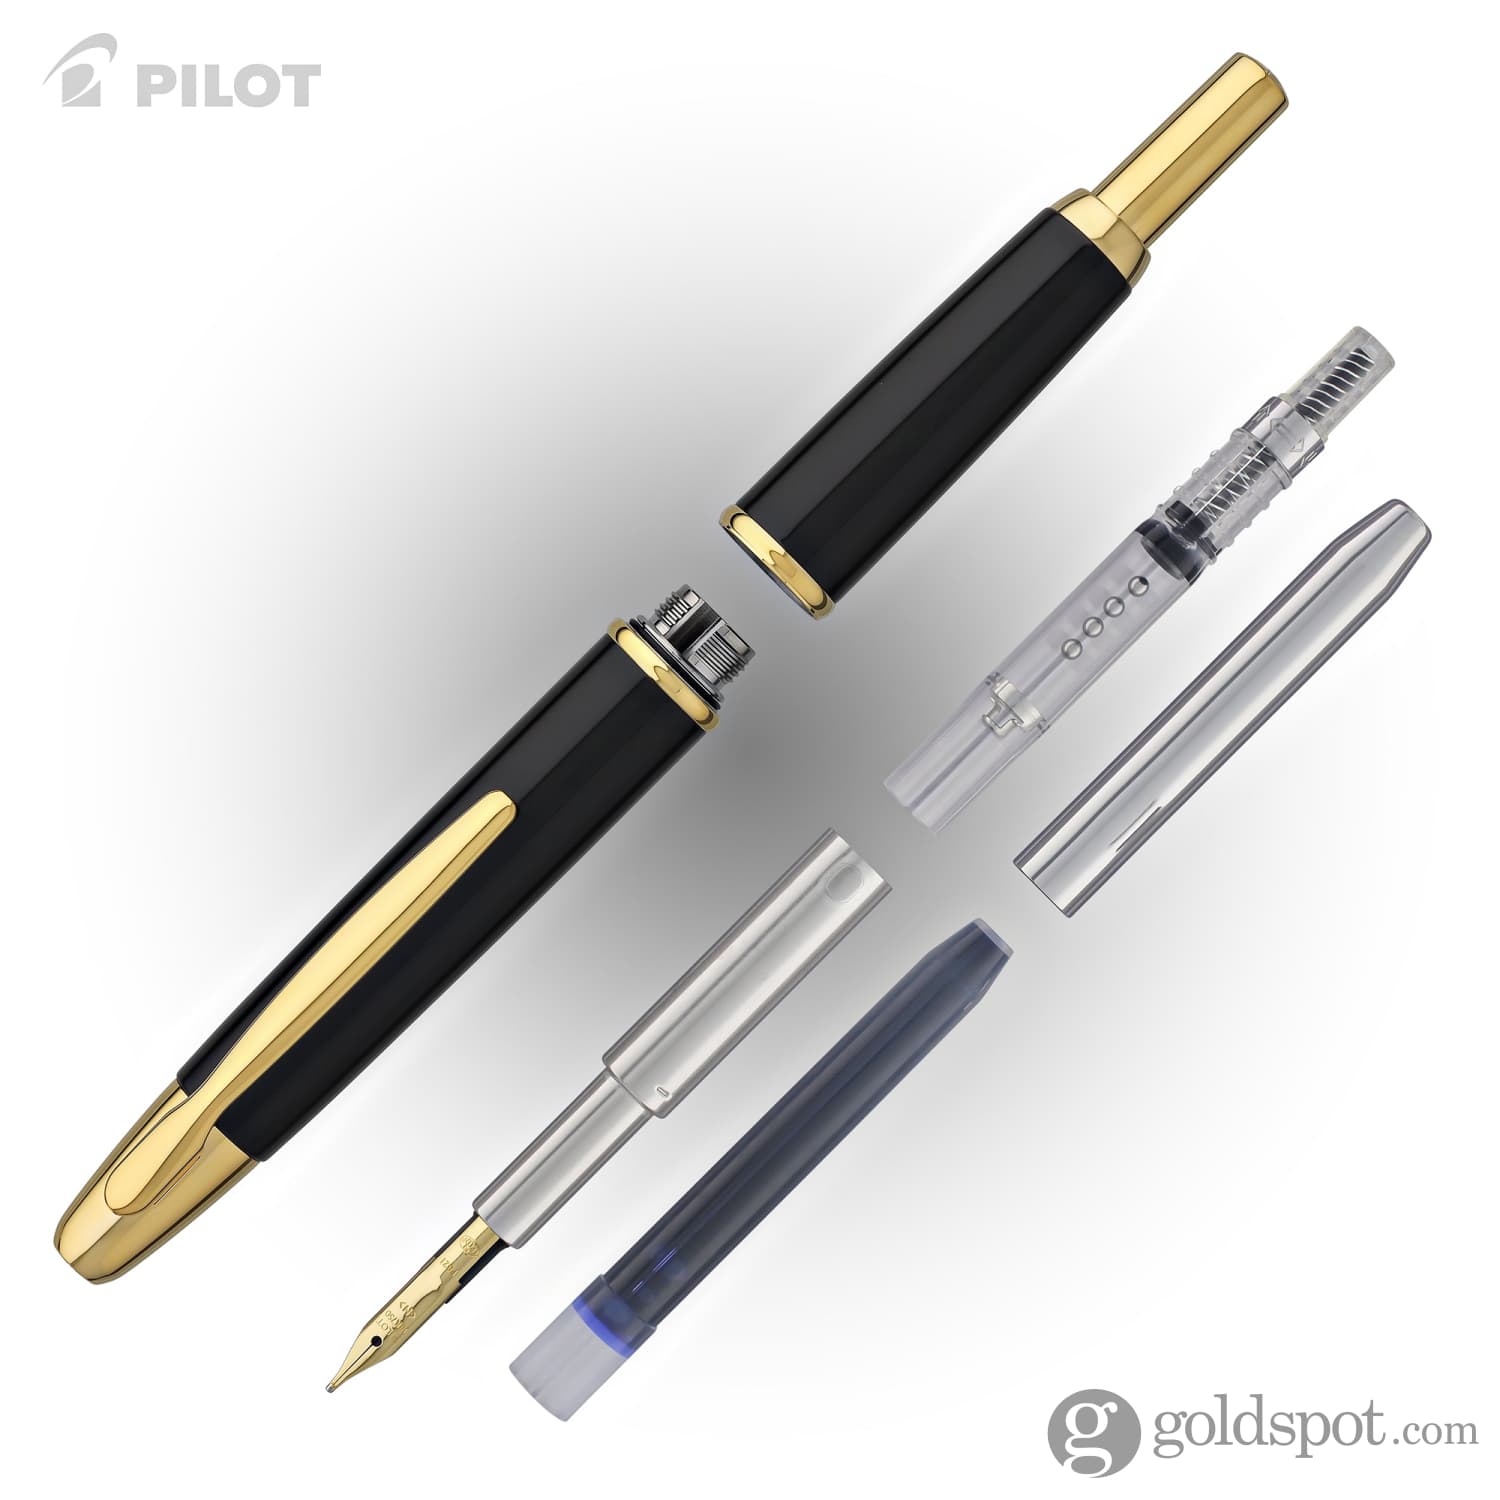 Pilot Vanishing Point Fountain Pen in Black & Gold - 18K Gold